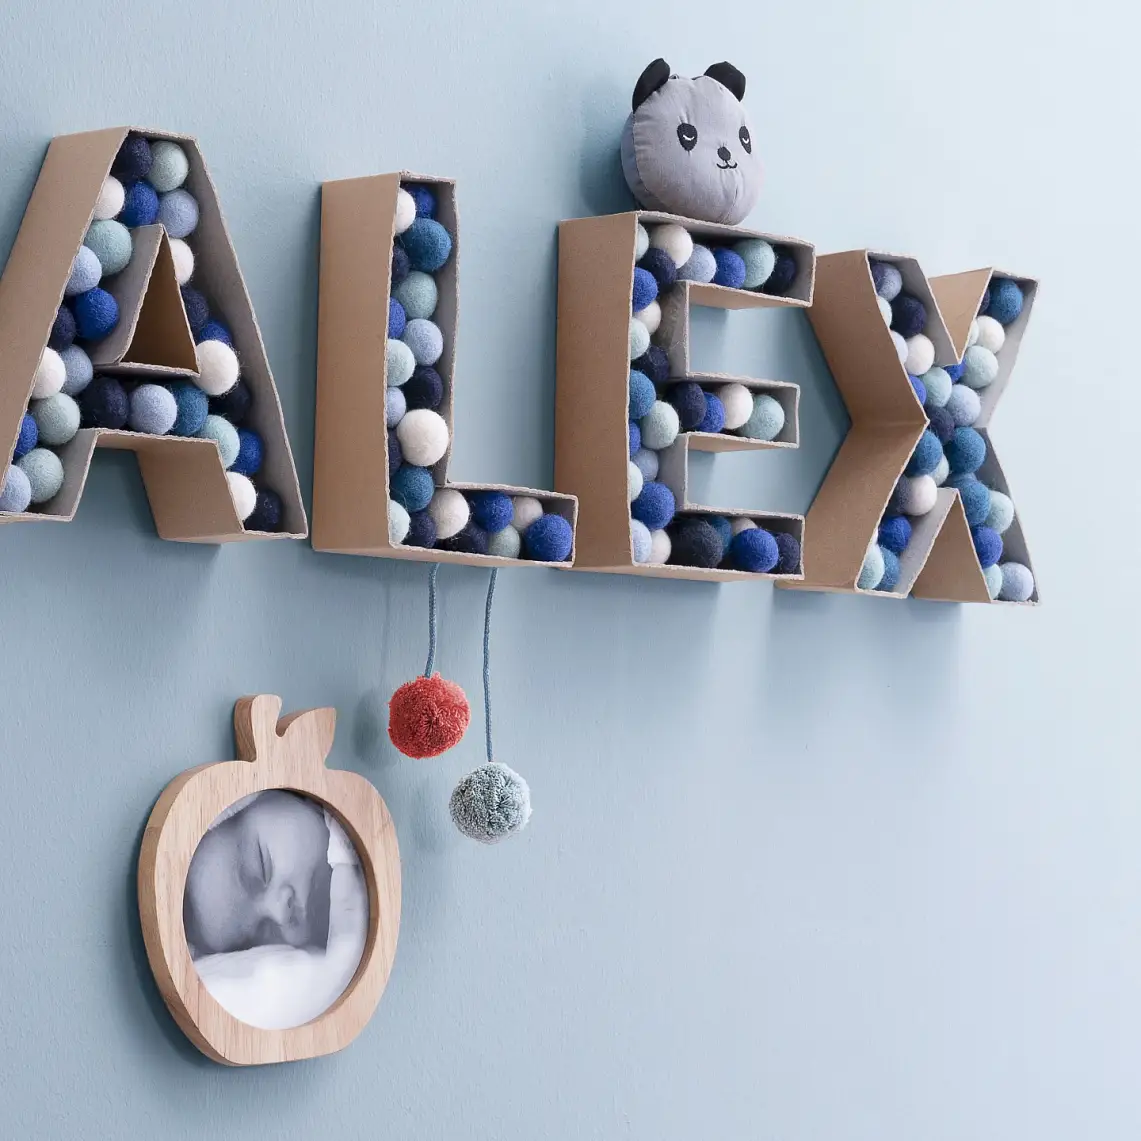 3D-Buchstaben aus Karton gefüllt mit bunten Filzkugeln, die den Namen „Alex“ schreiben.